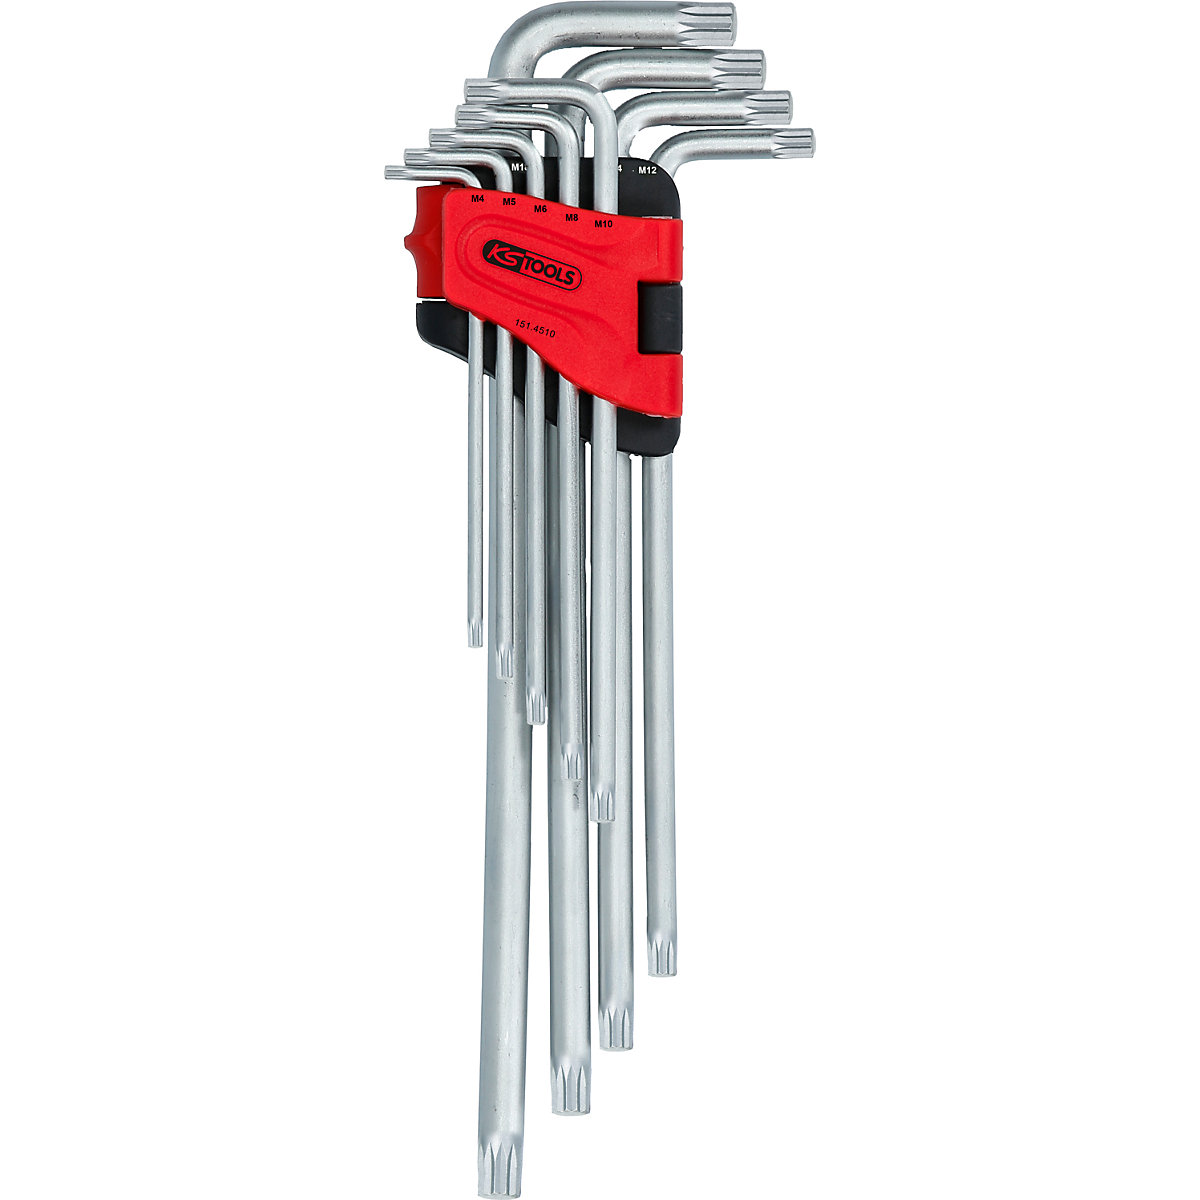 Angle key wrench set, XL – KS Tools